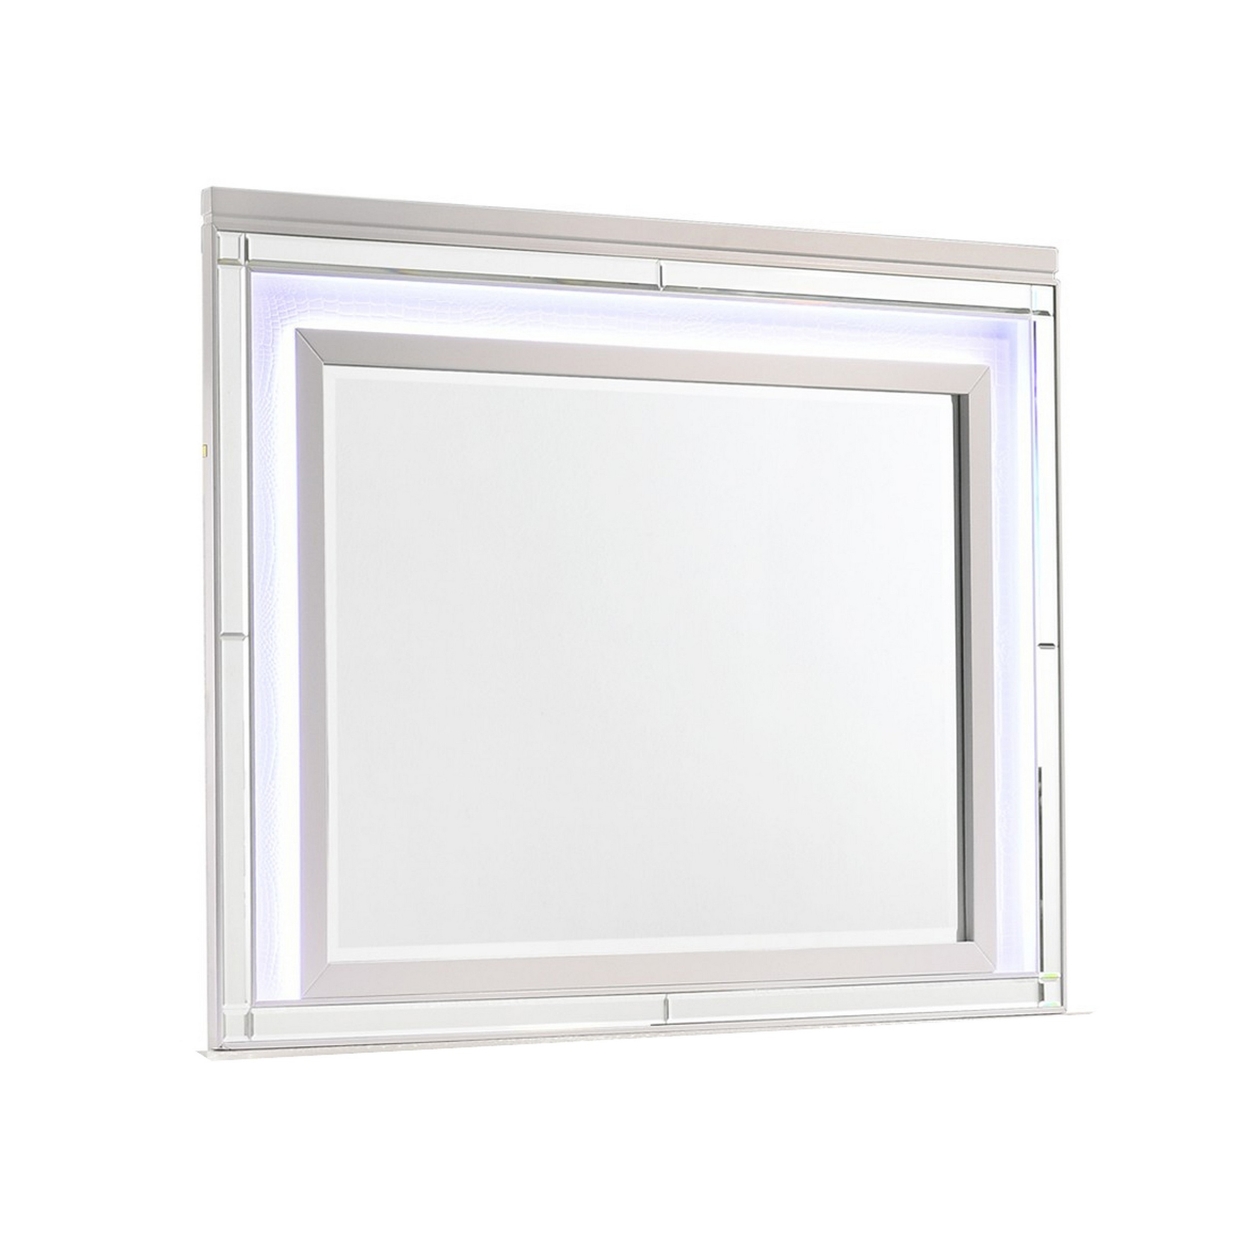 Lee 38 X 50 Dresser Mirror, Modern LED Light Trim, White Hardwood Frame -Saltoro Sherpi